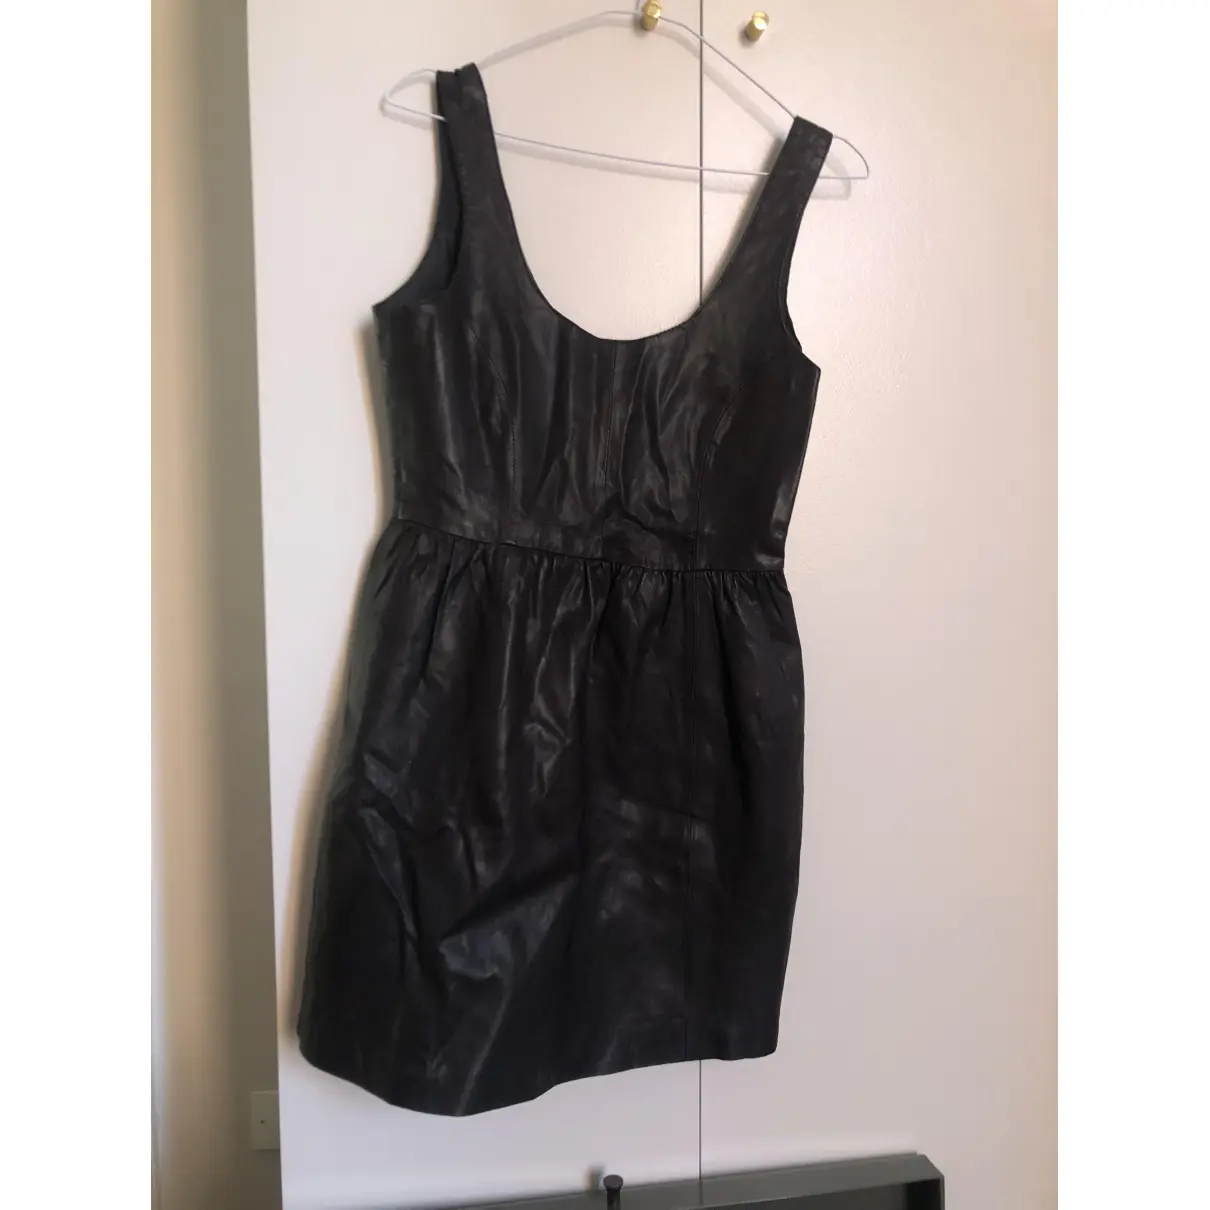 Buy Zara Leather mini dress online